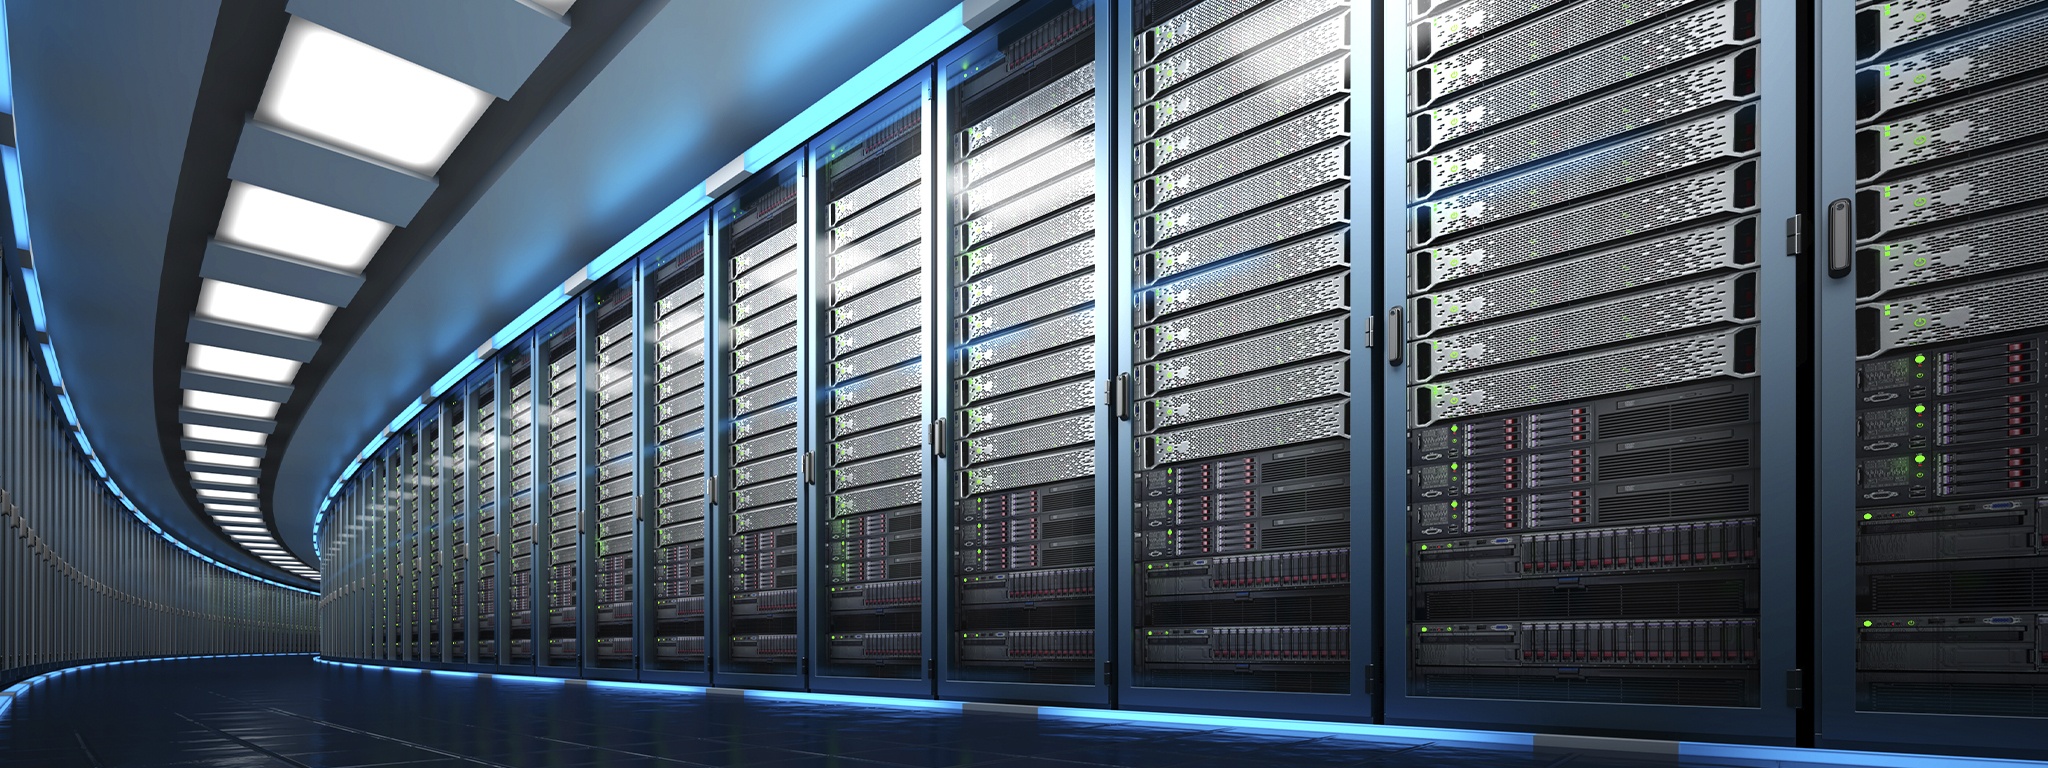 Digitalización 3D de un centro de datos, mostrando una enorme sala de servidores con una larga línea de bastidores de servidores